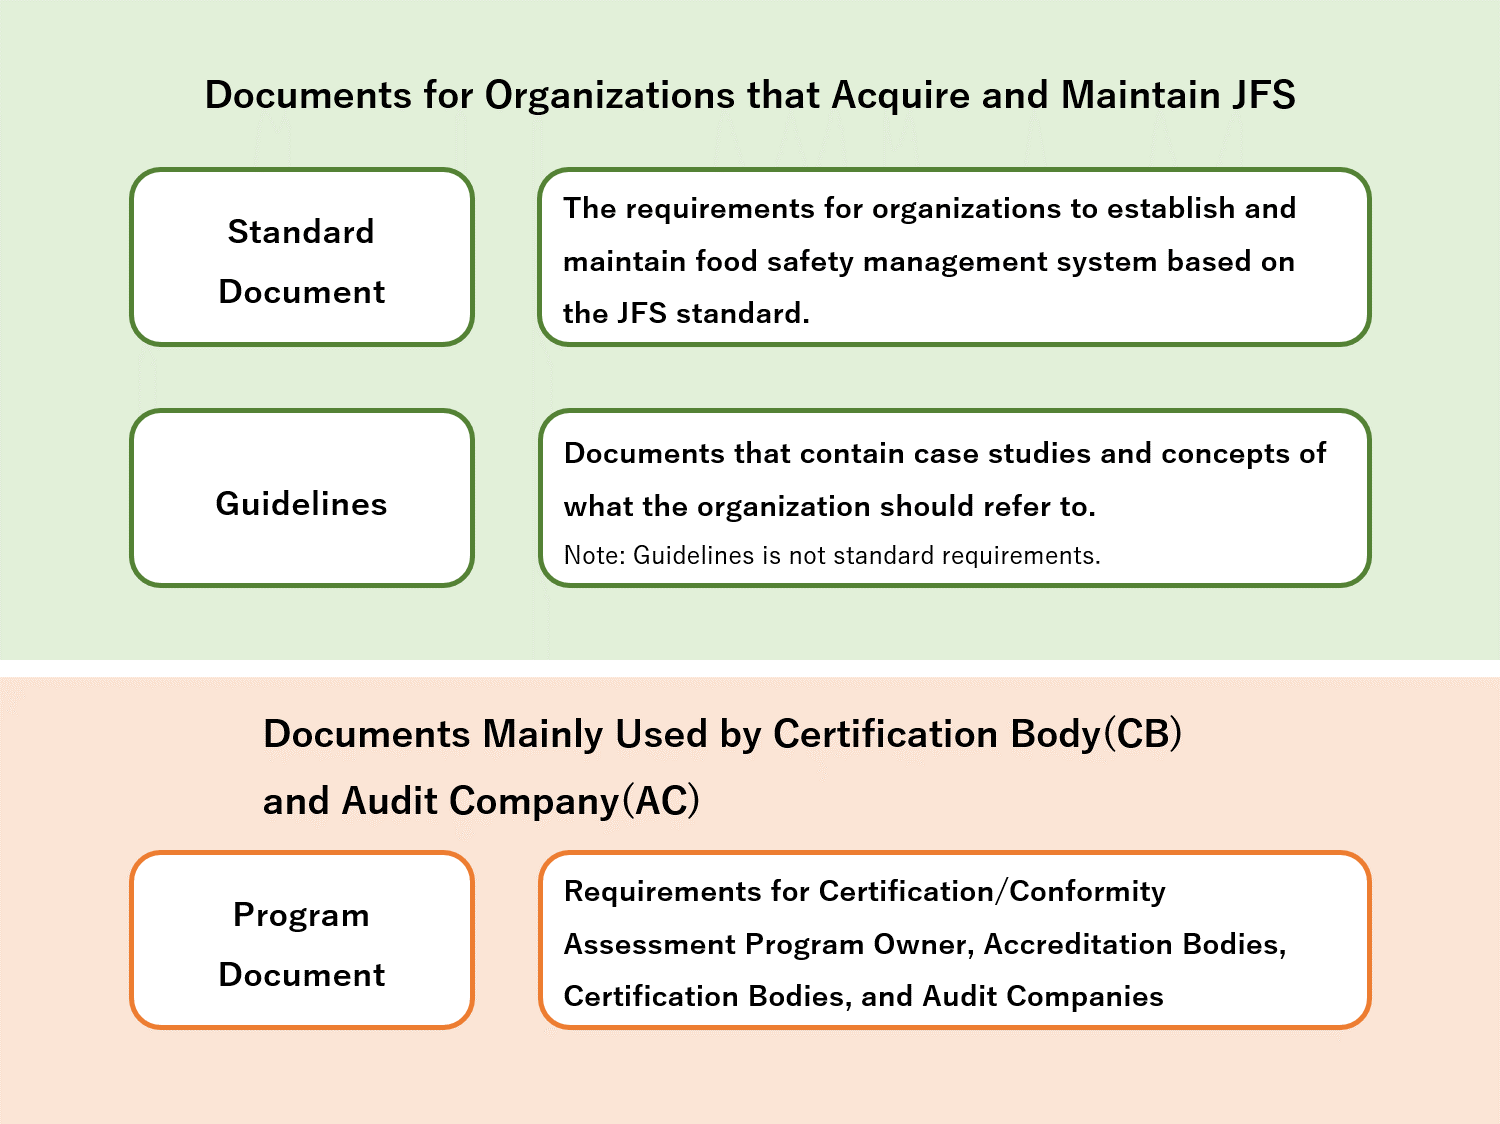 Phạm vi lĩnh vực của tiêu chuẩn JFS